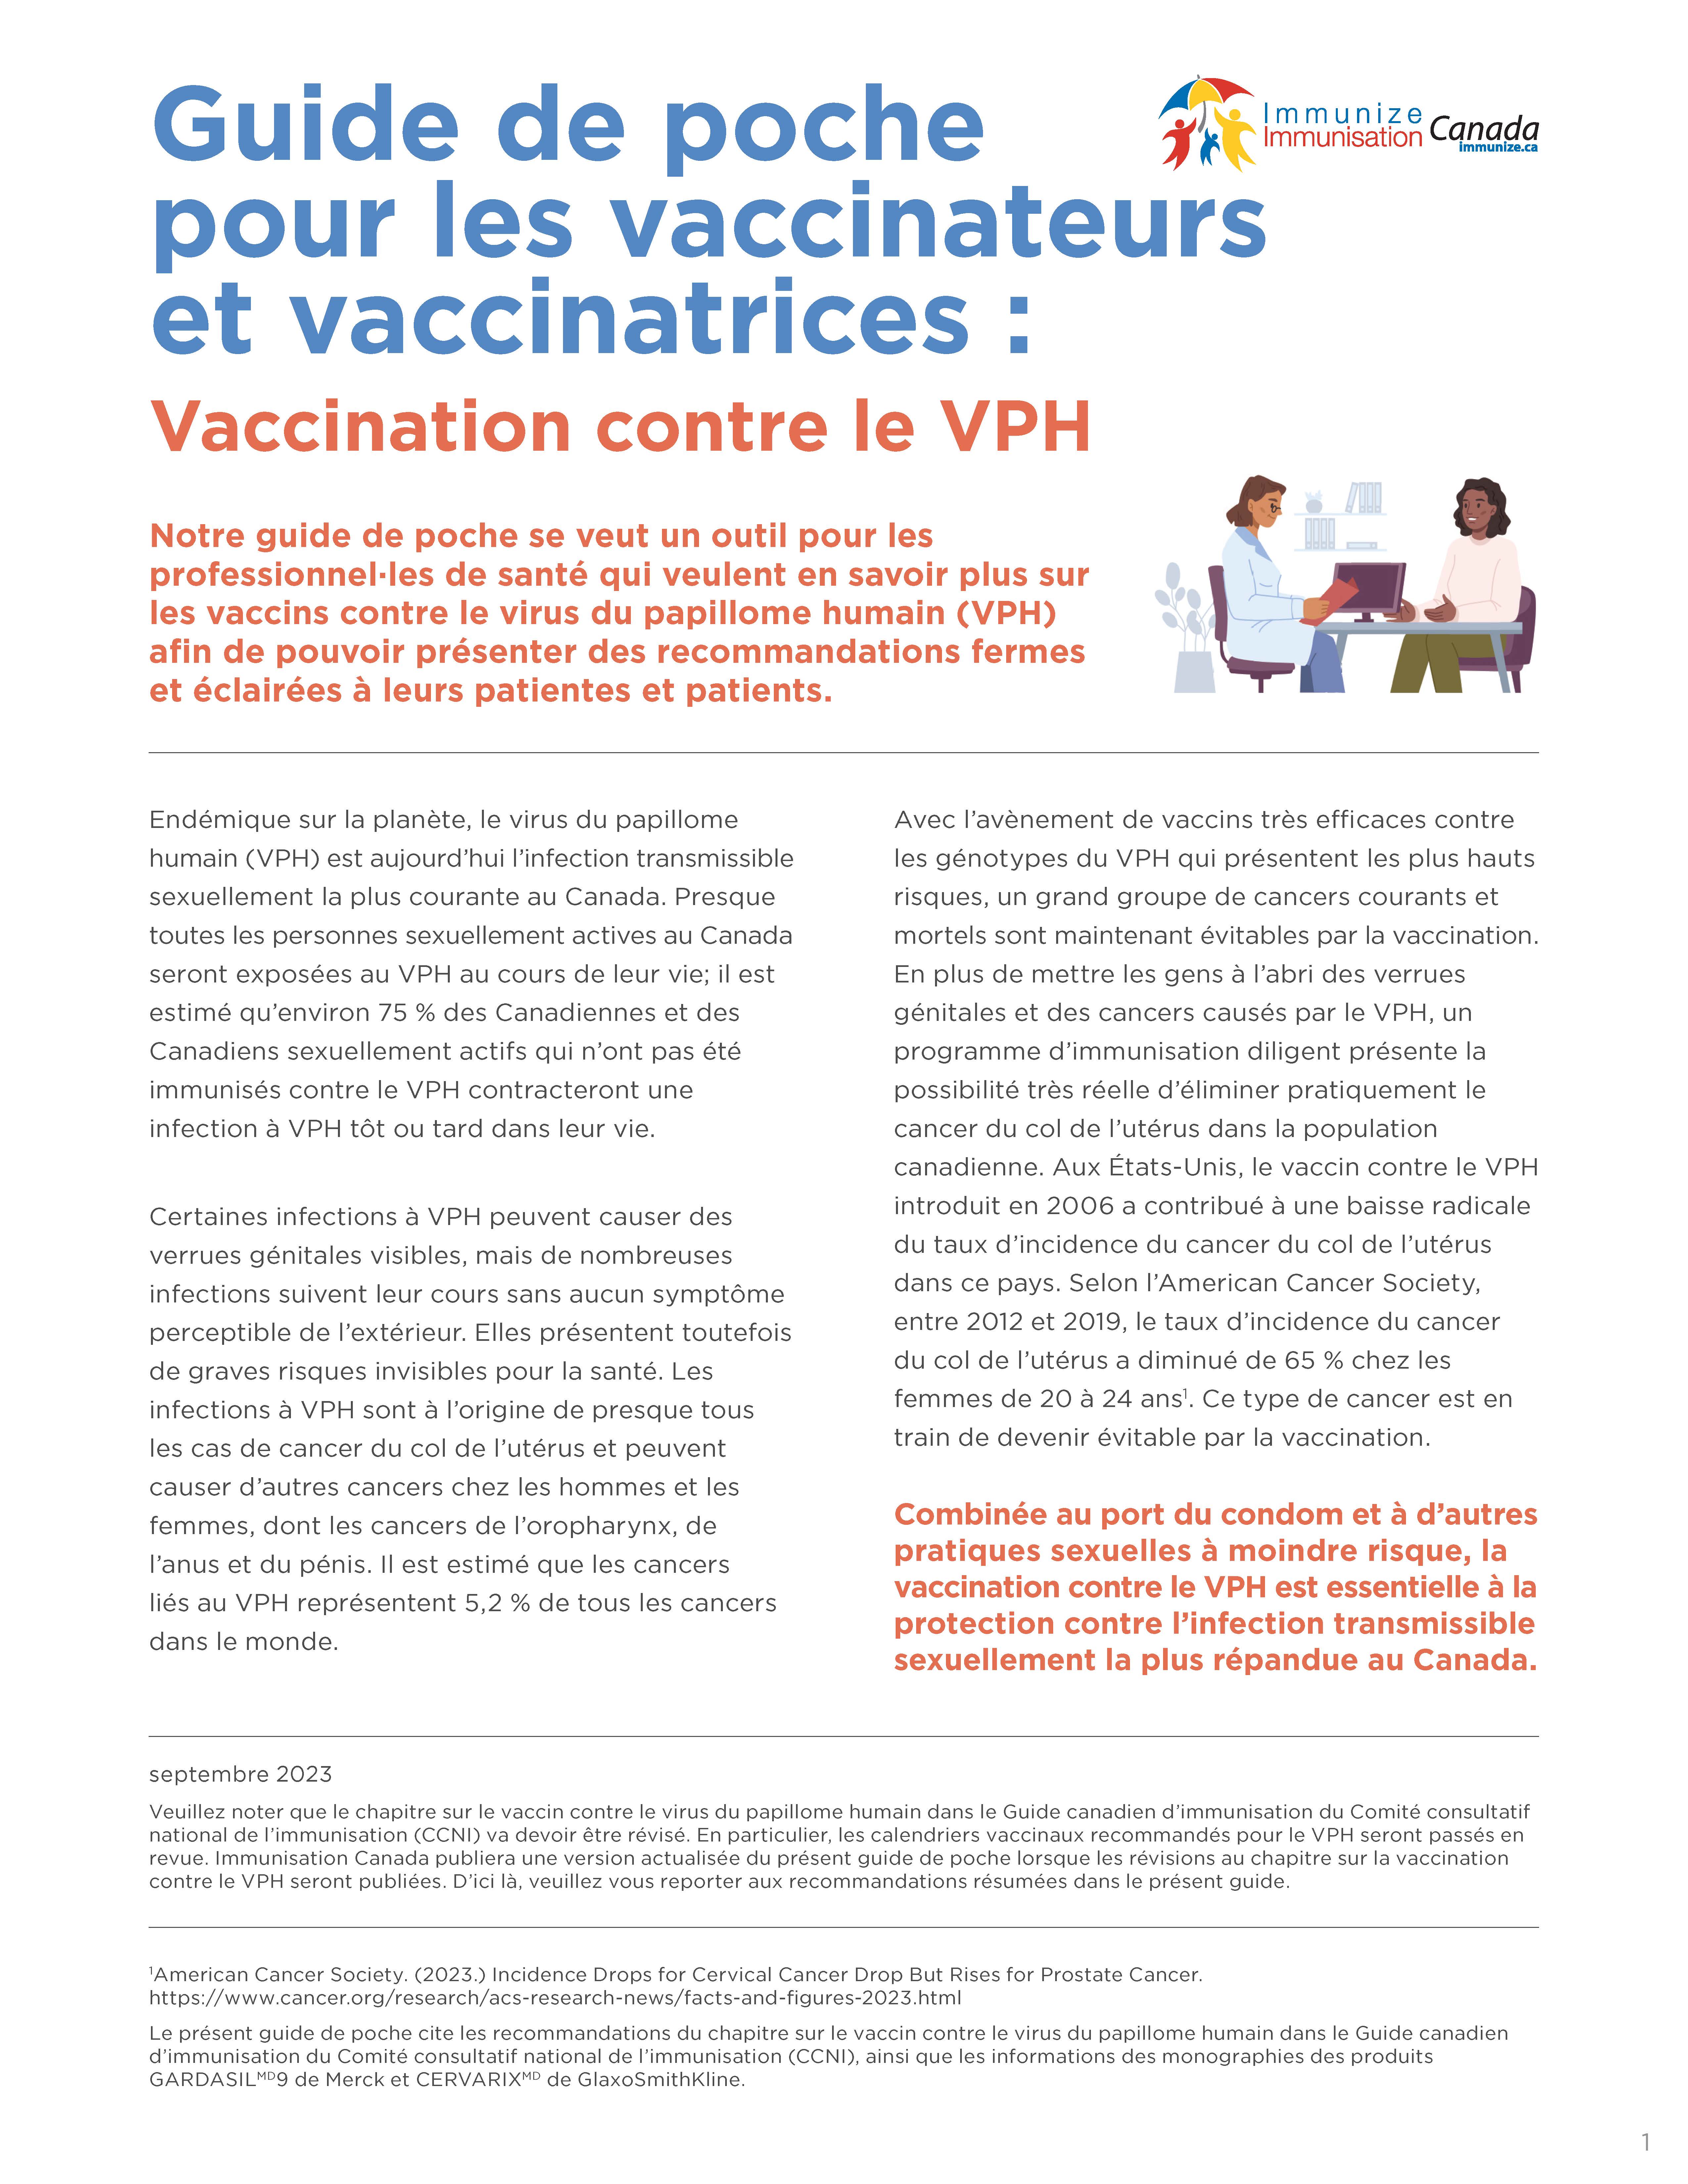 Guide de poche pour les vaccinateurs et vaccinatrices : Vaccination contre le VPH